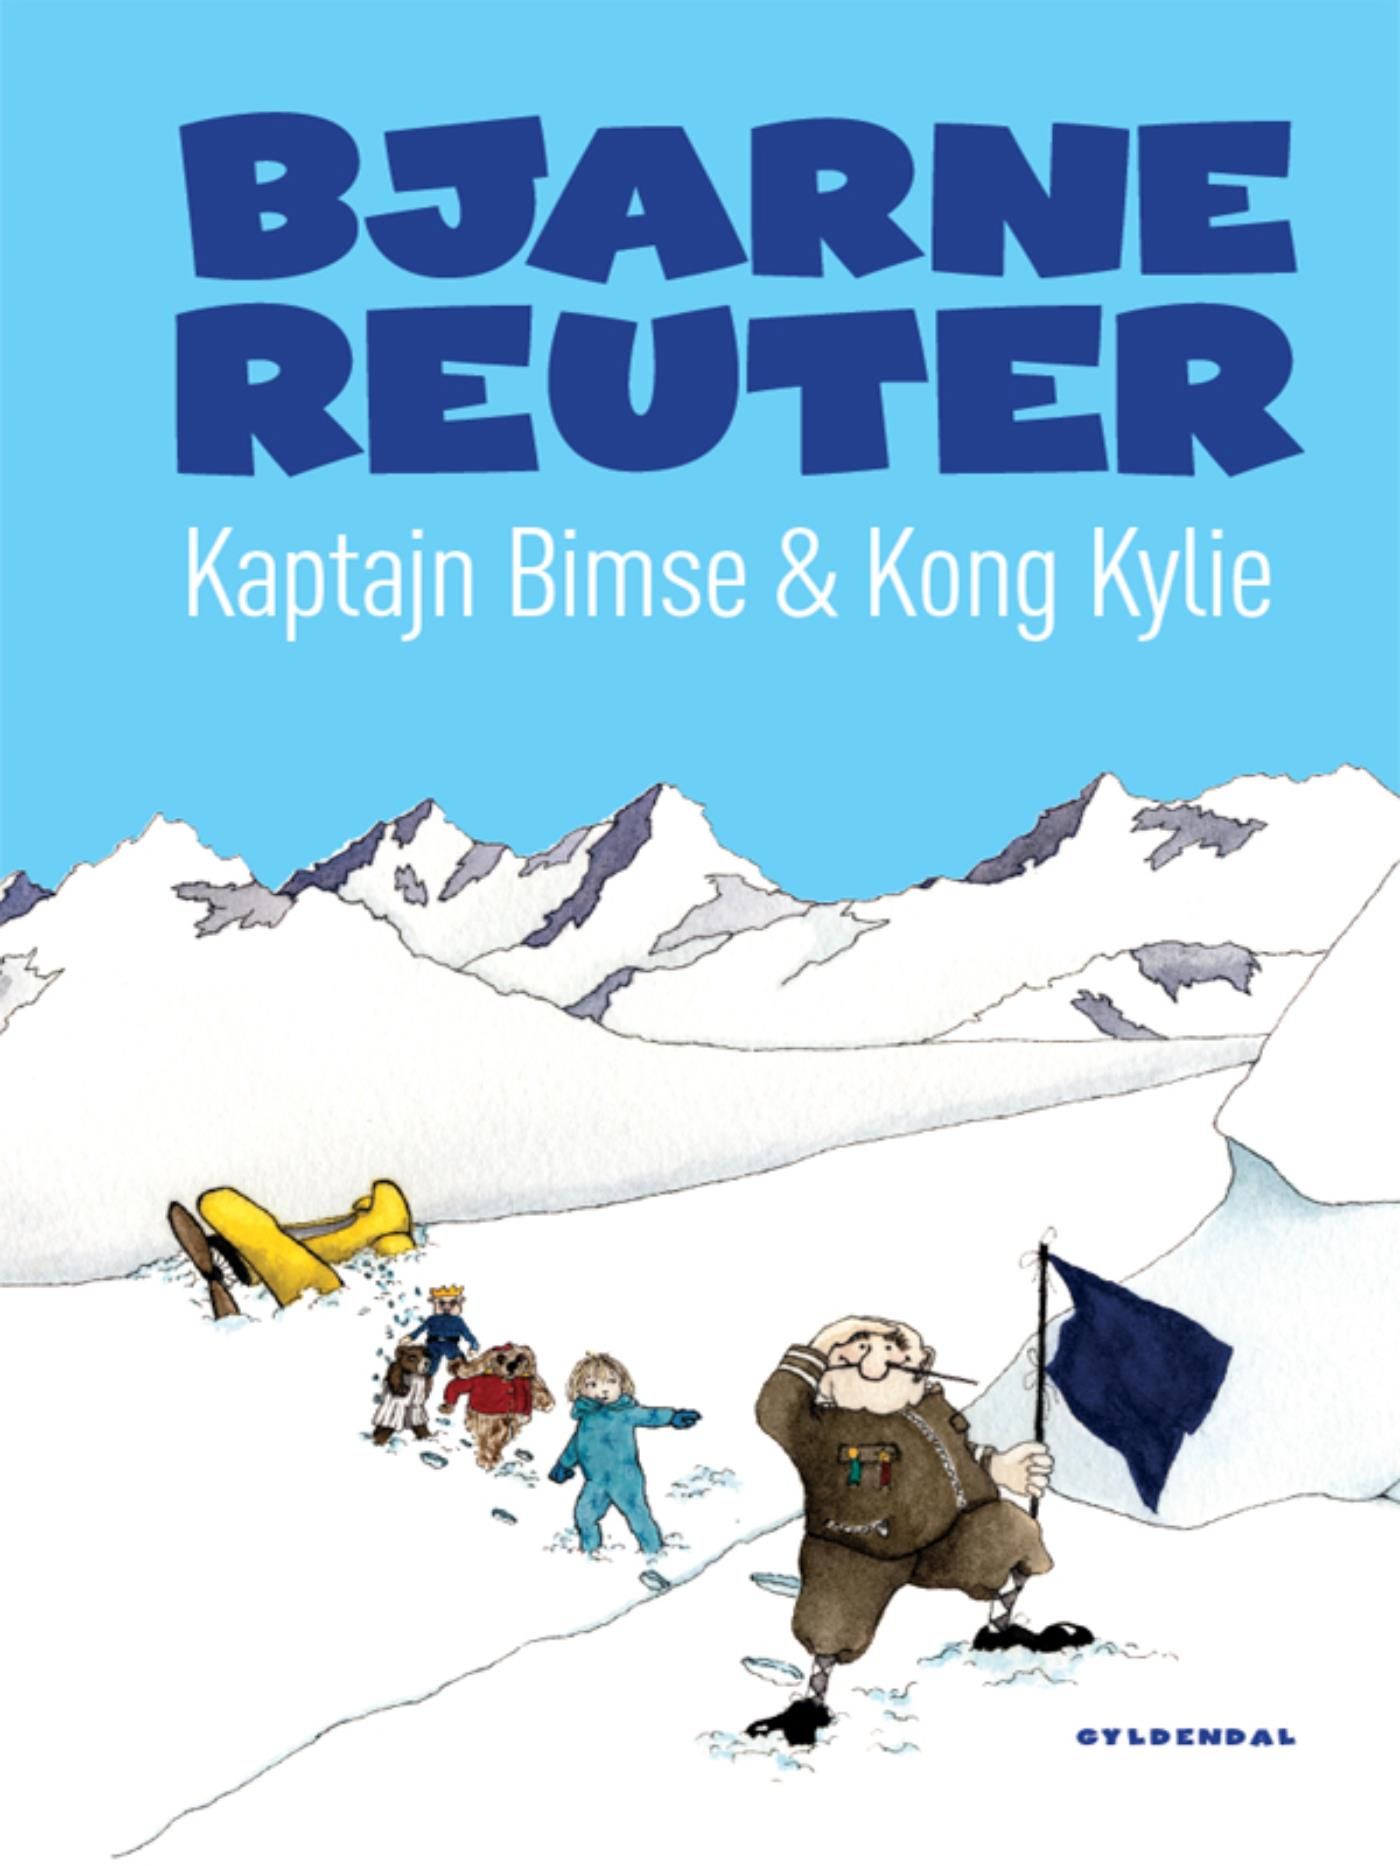 Kaptajn Bimse & Kong Kylie, e-bog af Bjarne Reuter